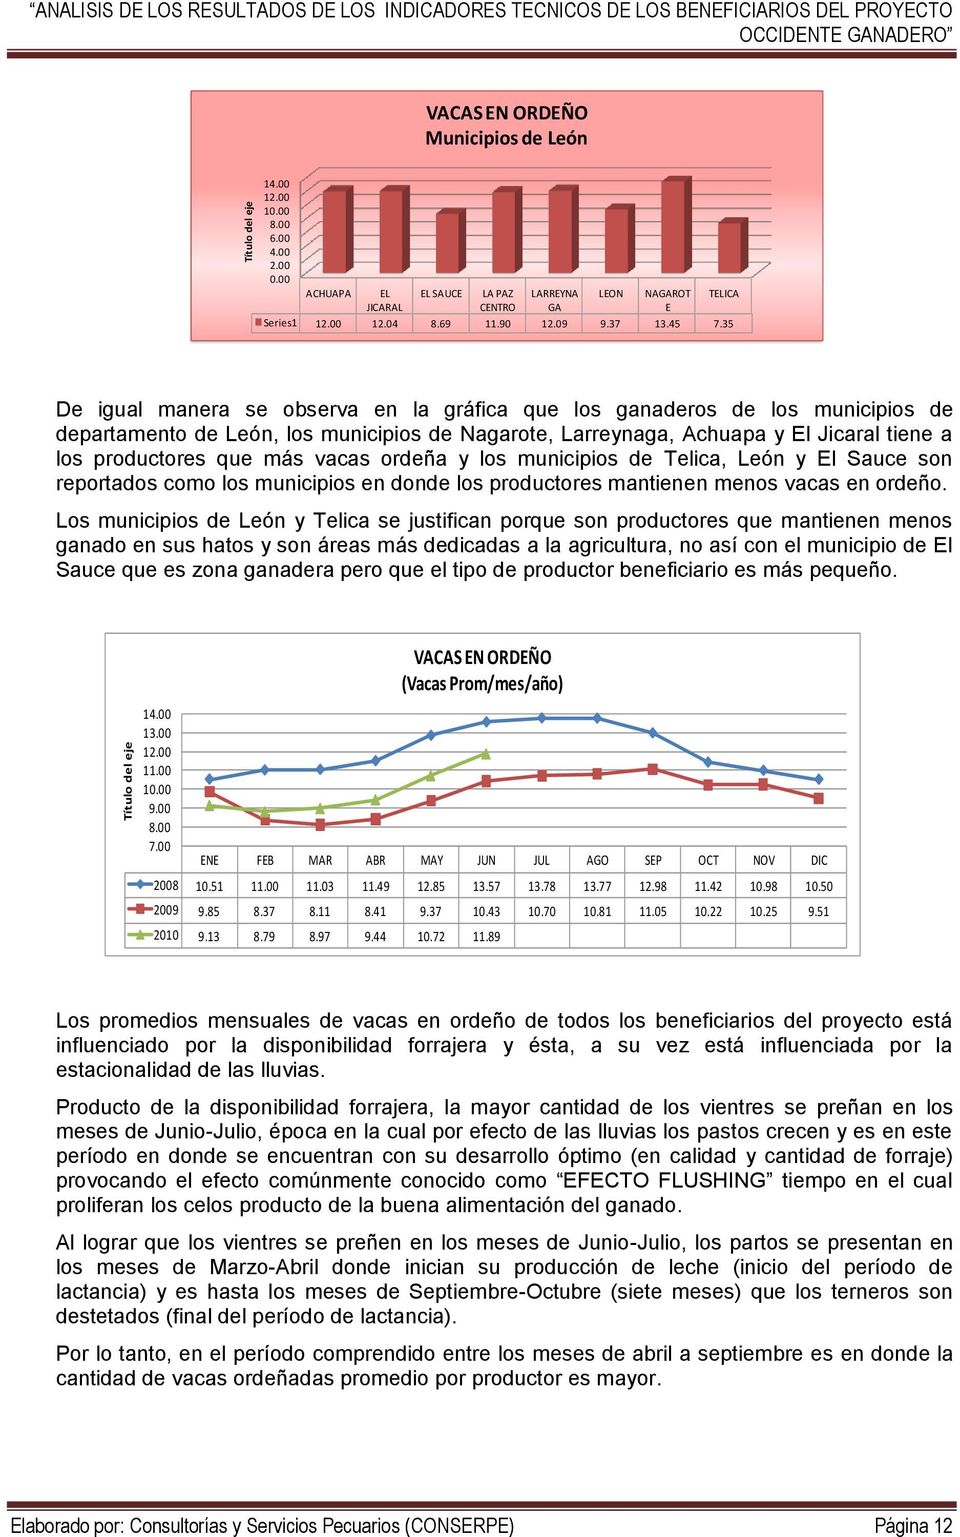 35 De igual manera se observa en la gráfica que los ganaderos de los municipios de departamento de León, los municipios de Nagarote, Larreynaga, Achuapa y El Jicaral tiene a los productores que más